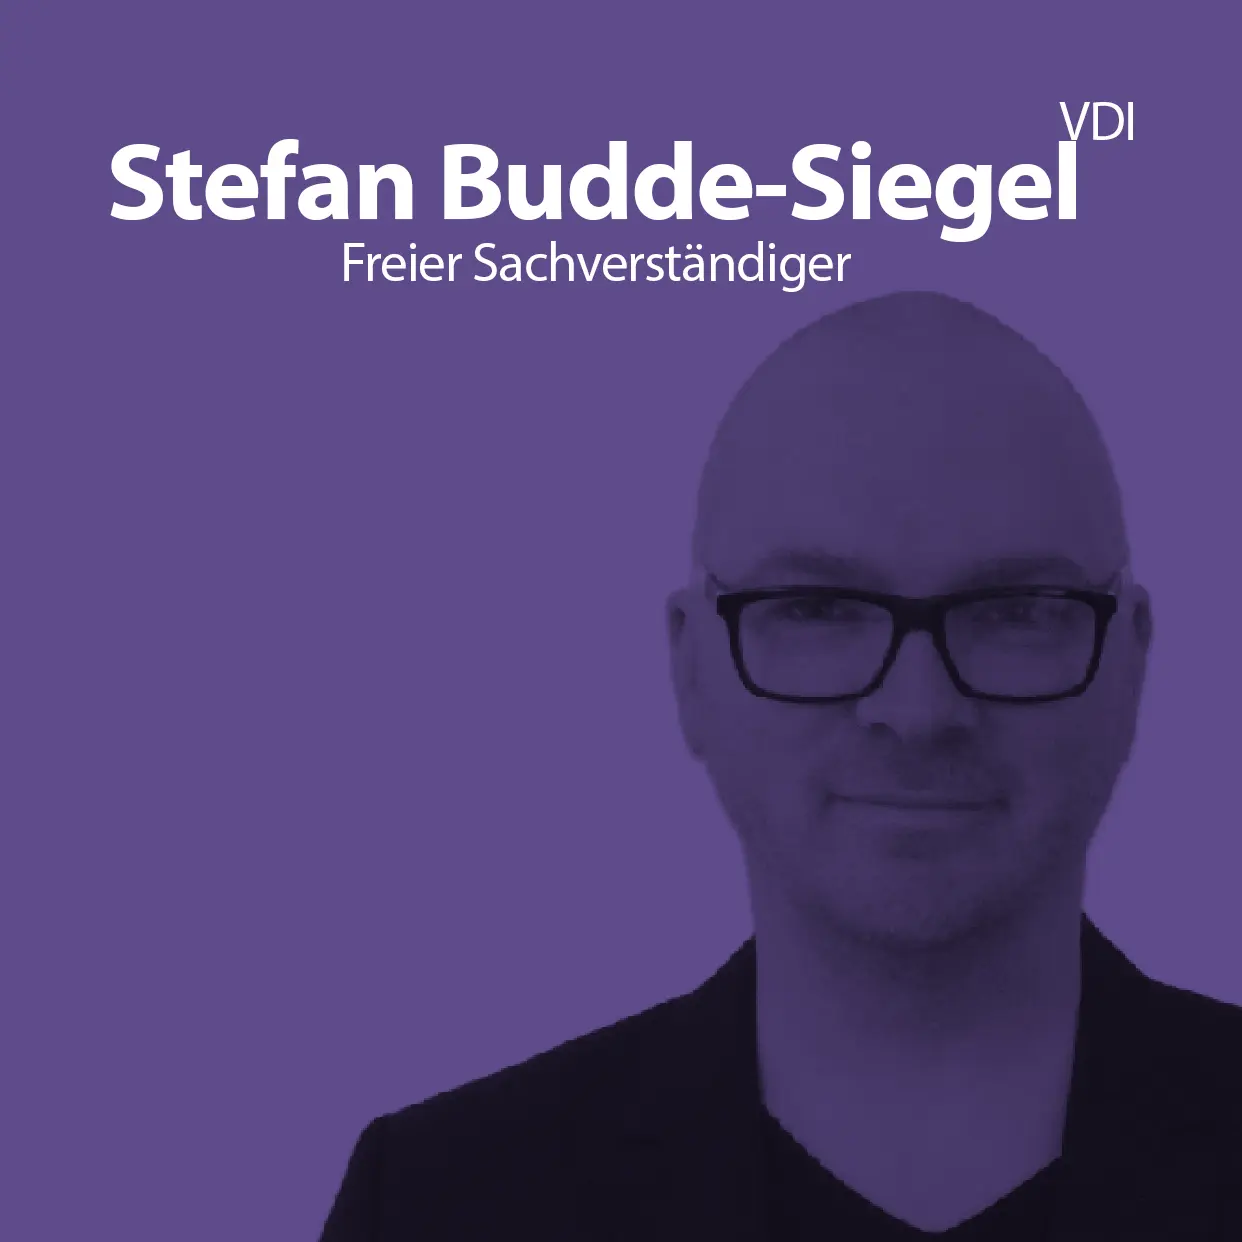 Stefan Budde-Siegel VDI | Freier Sachverständiger